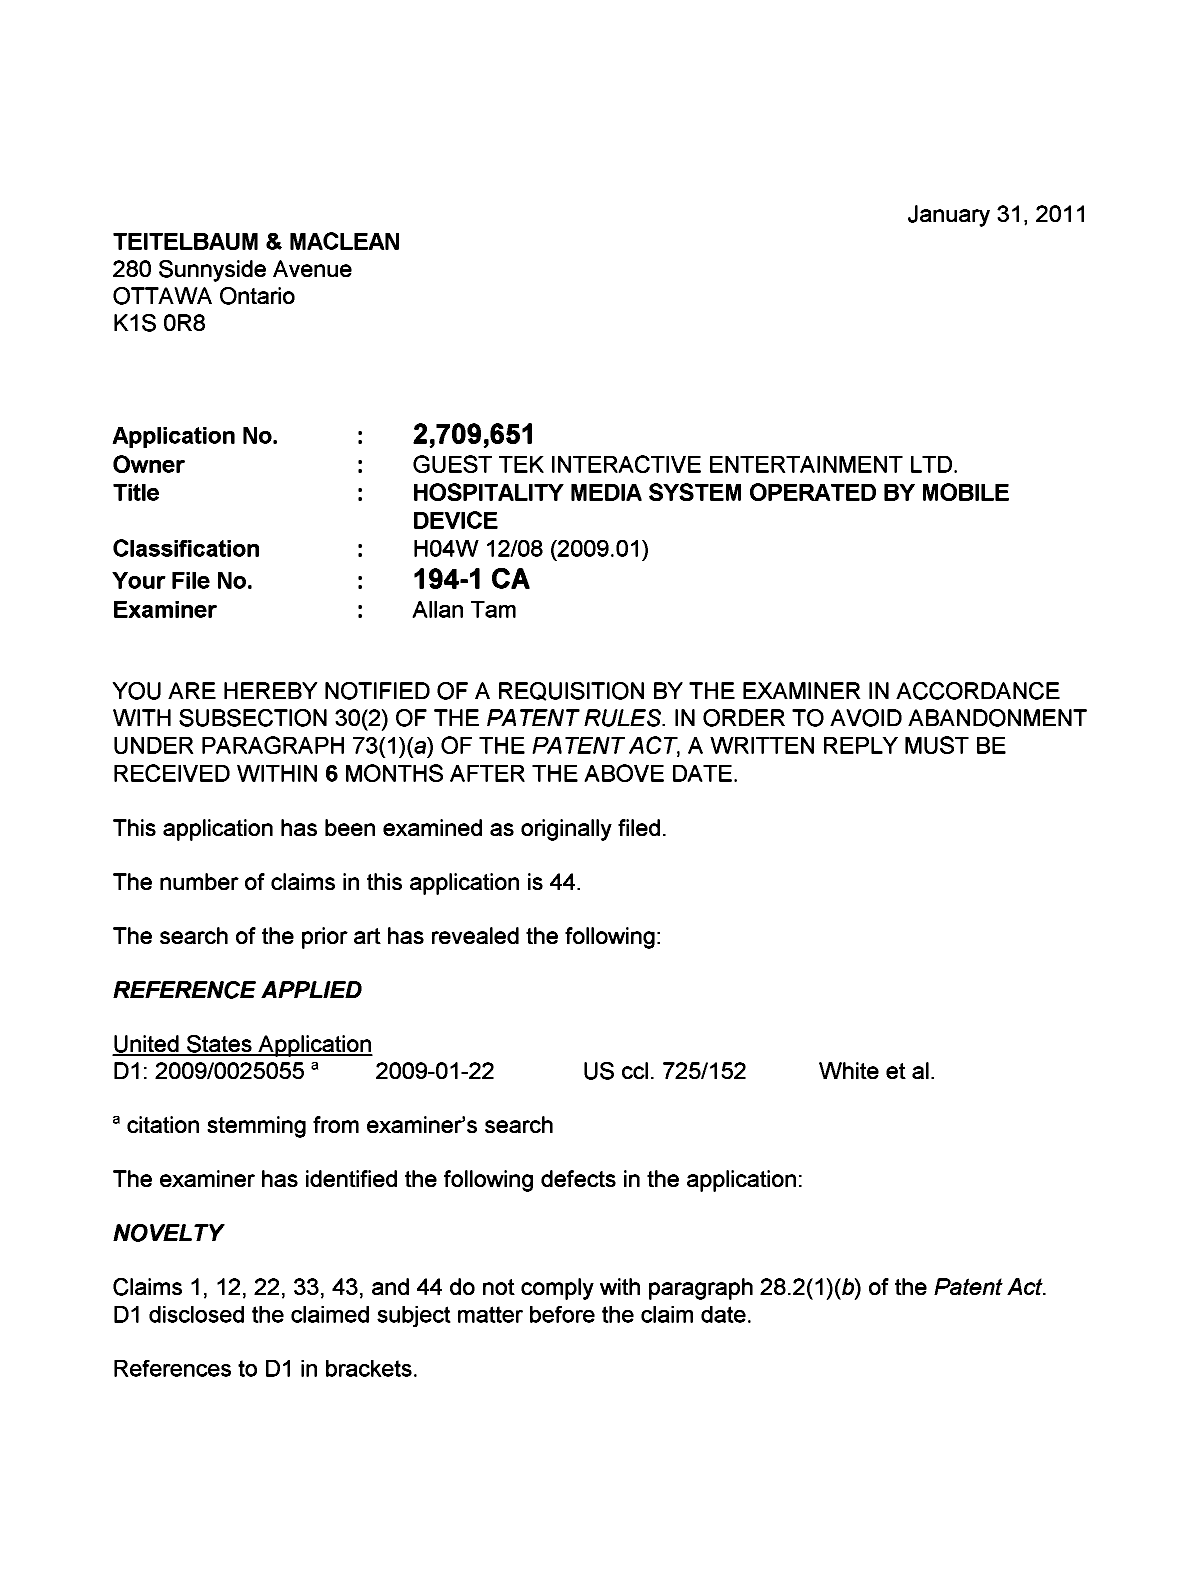 Document de brevet canadien 2709651. Poursuite-Amendment 20110131. Image 1 de 3